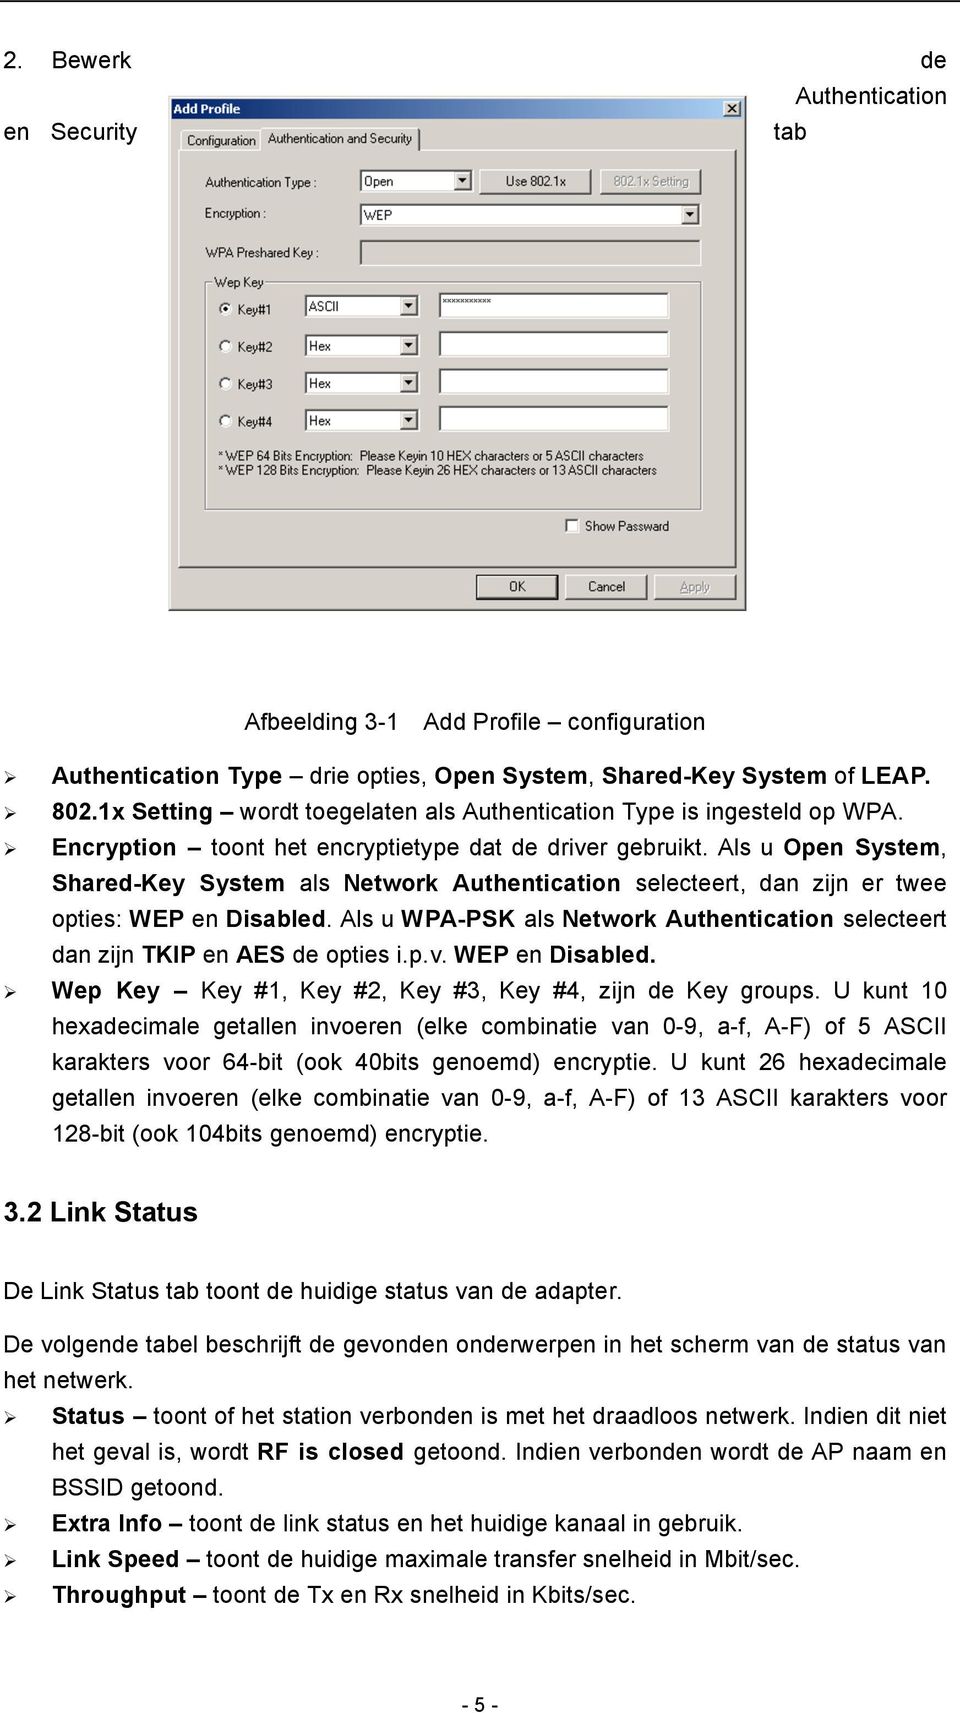 Als u Open System, Shared-Key System als Network Authentication selecteert, dan zijn er twee opties: WEP en Disabled.